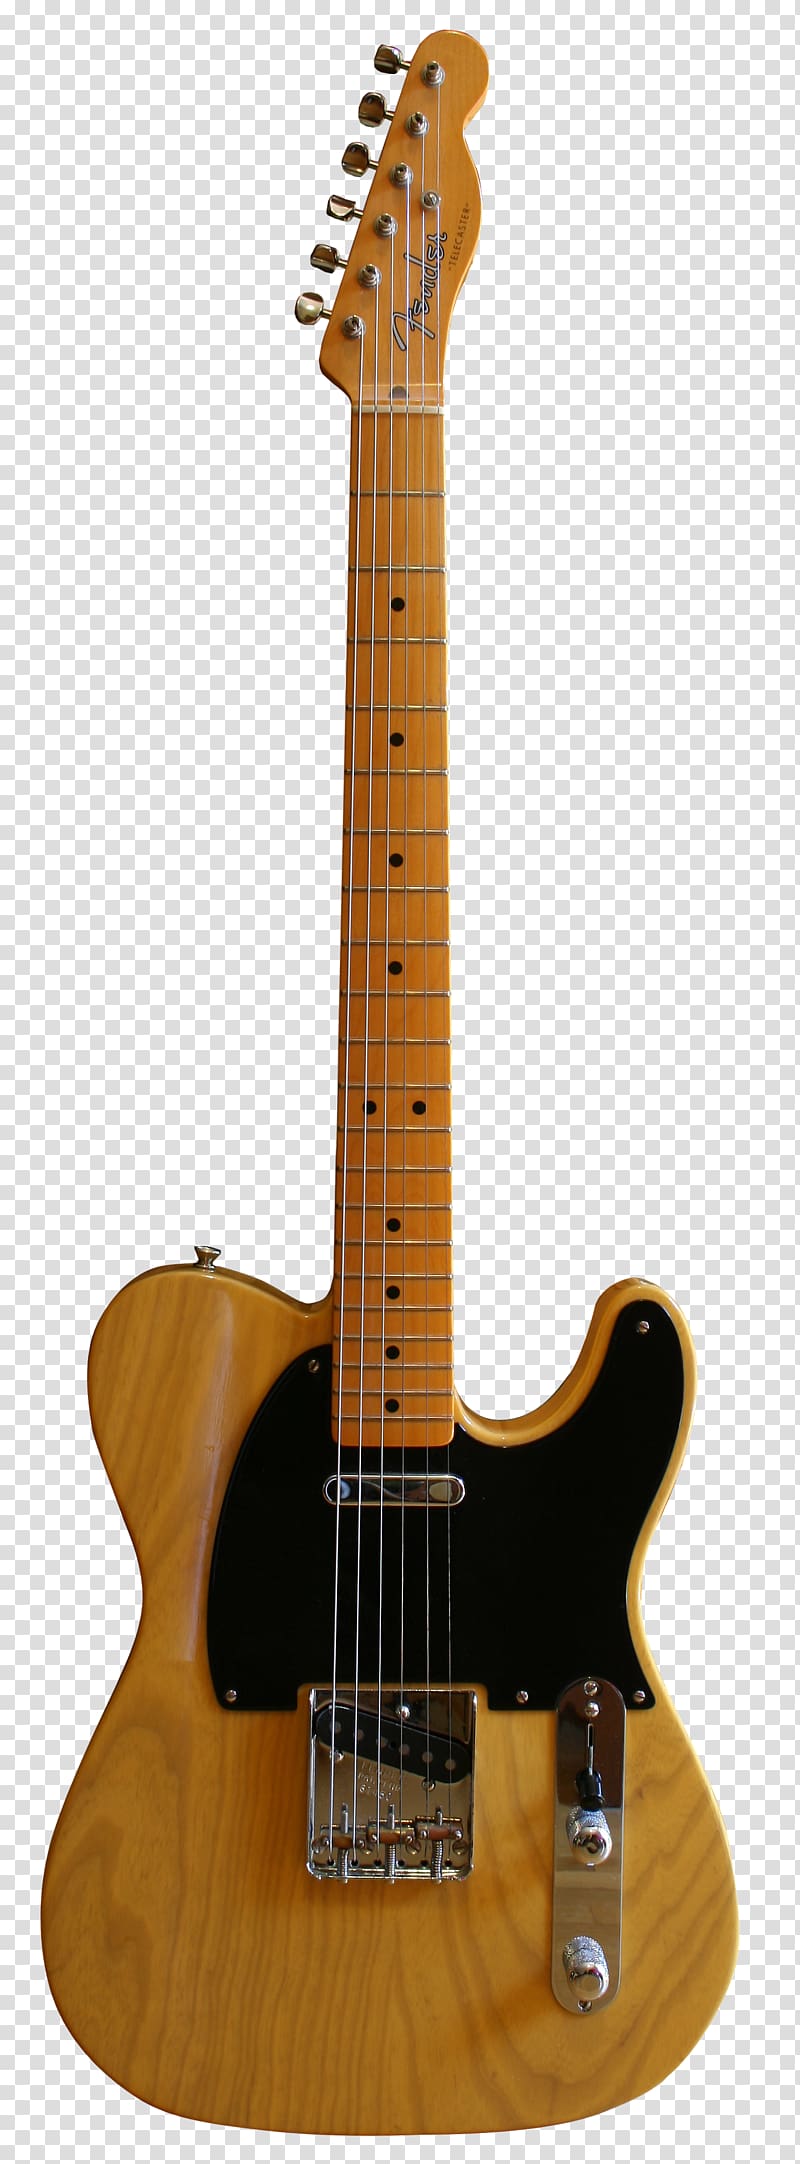 Fender Stratocaster Resonator guitar Fender Telecaster Electric guitar Musical Instruments, vintage transparent background PNG clipart